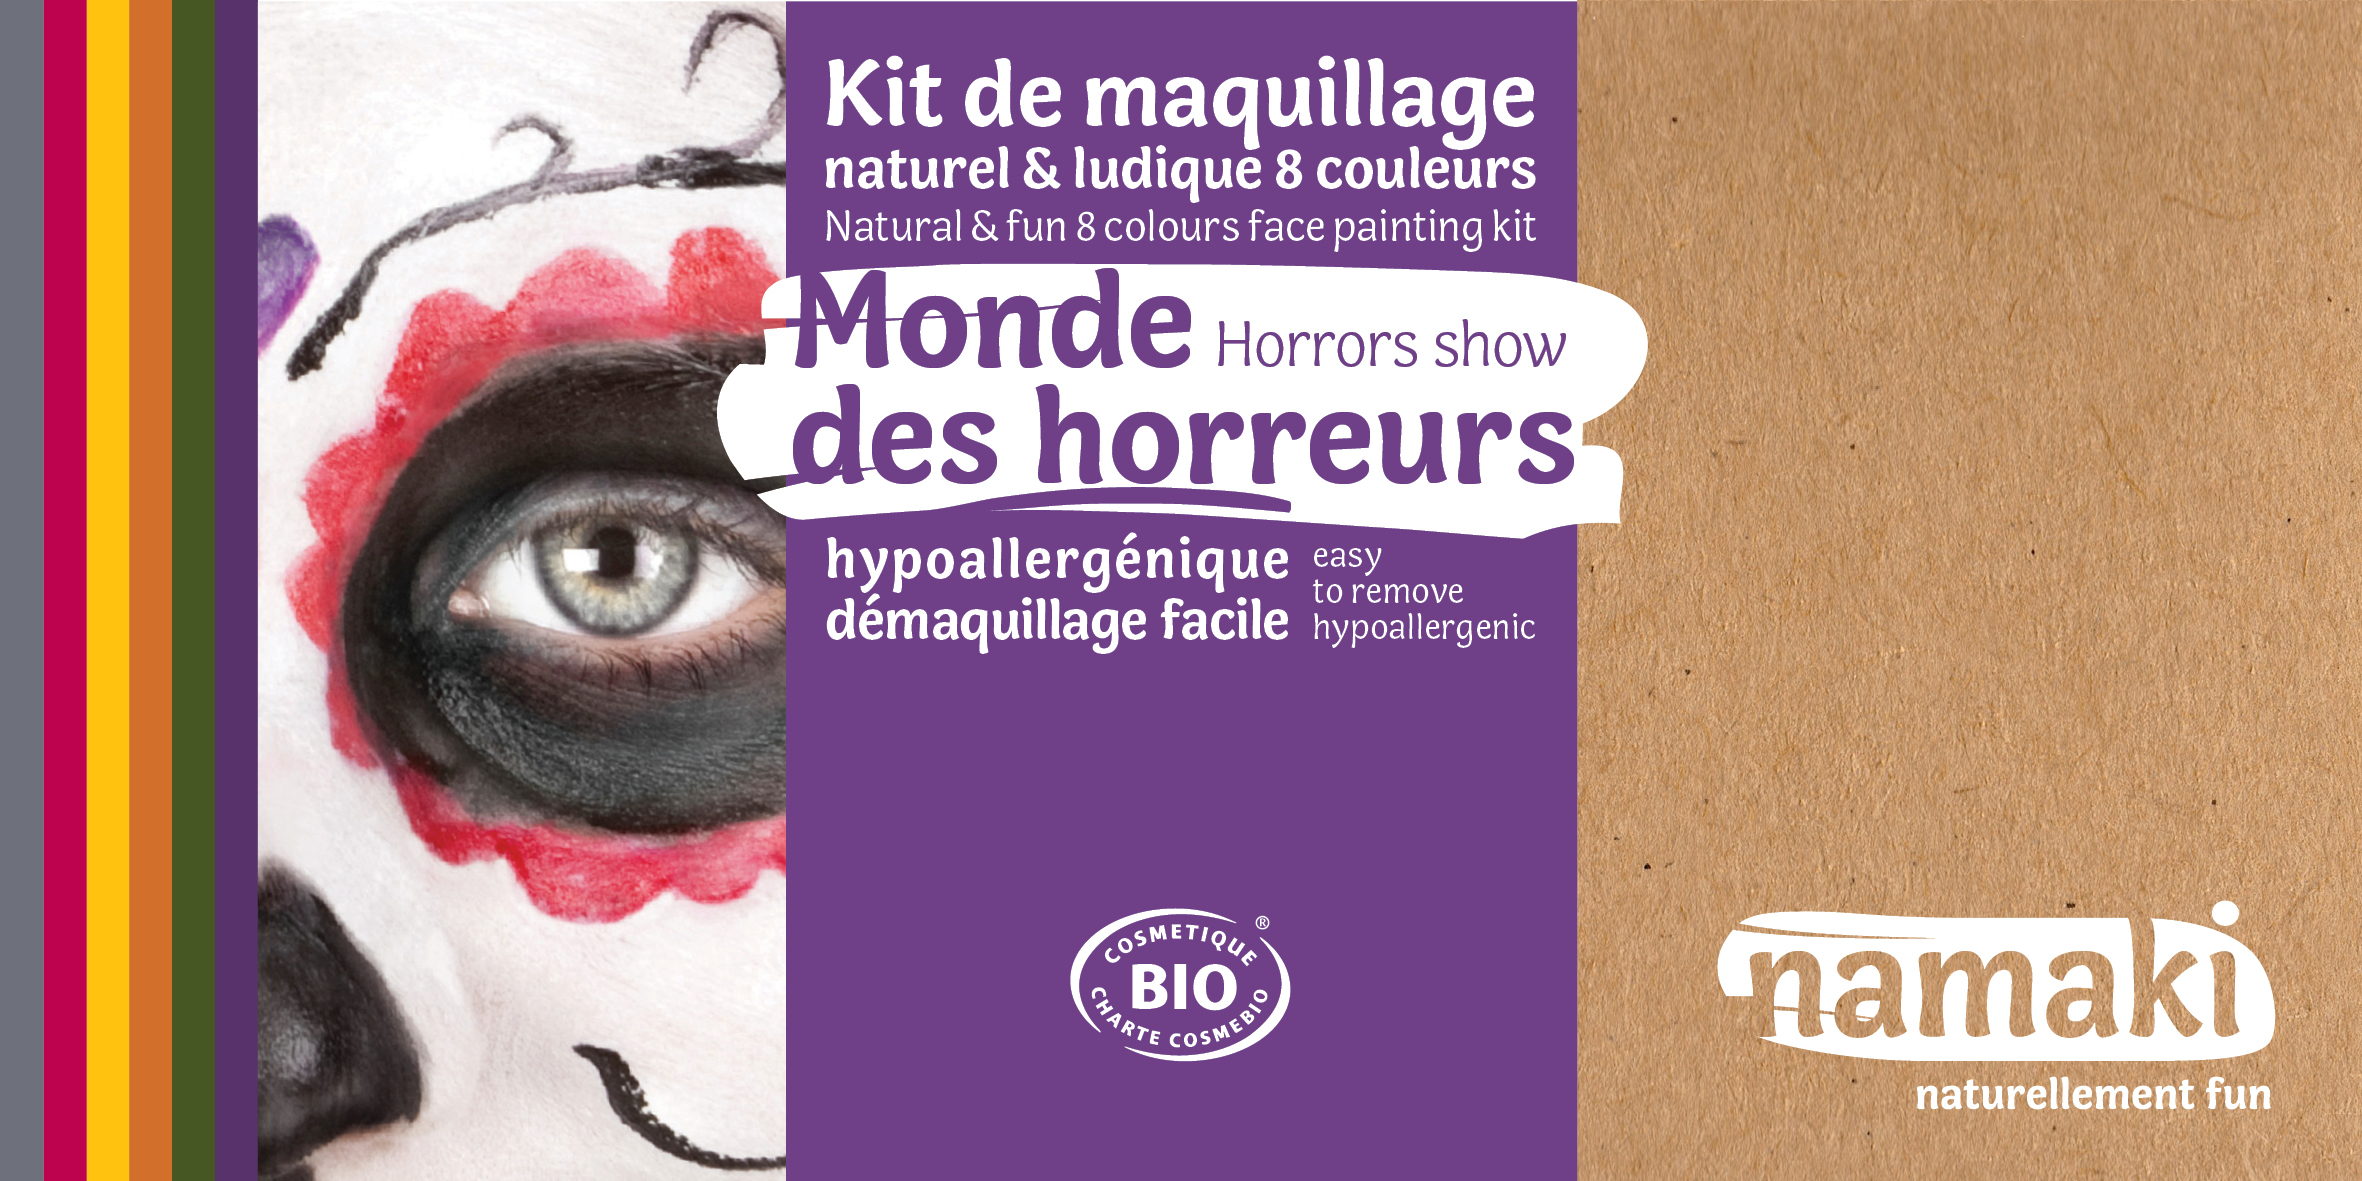 Doux Good - Namaki - kit de maquillage bio 8 couleurs Monde des horreurs